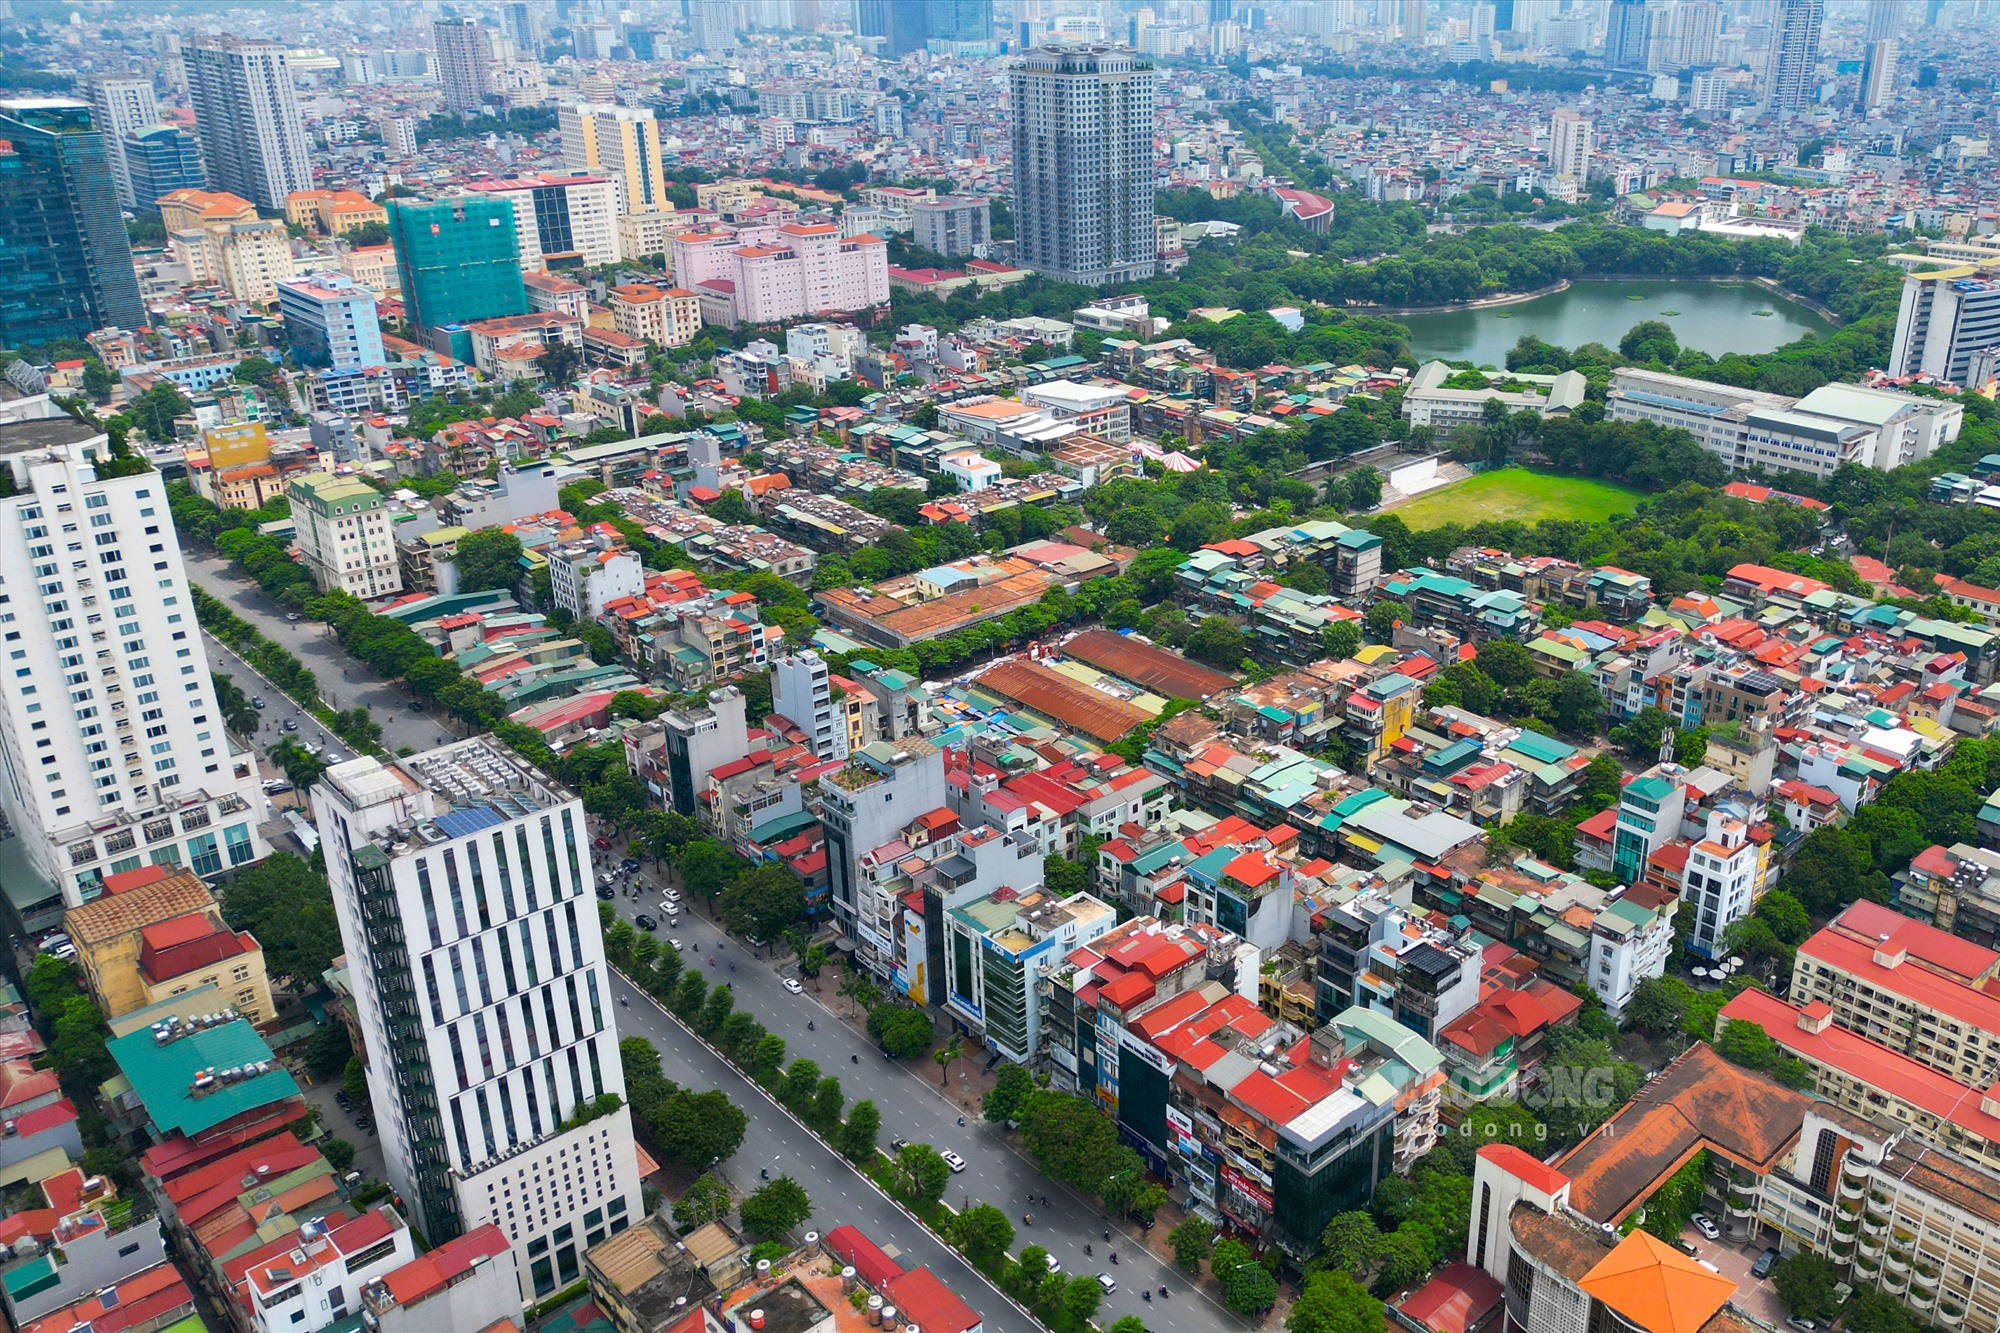 Cụ thể, UBND TP Hà Nội vừa quyết định lập quy hoạch chi tiết 1/500 để xây dựng lại 23 chung cư cũ với khoảng 6.000 dân ở khu tập thể Nghĩa Tân.